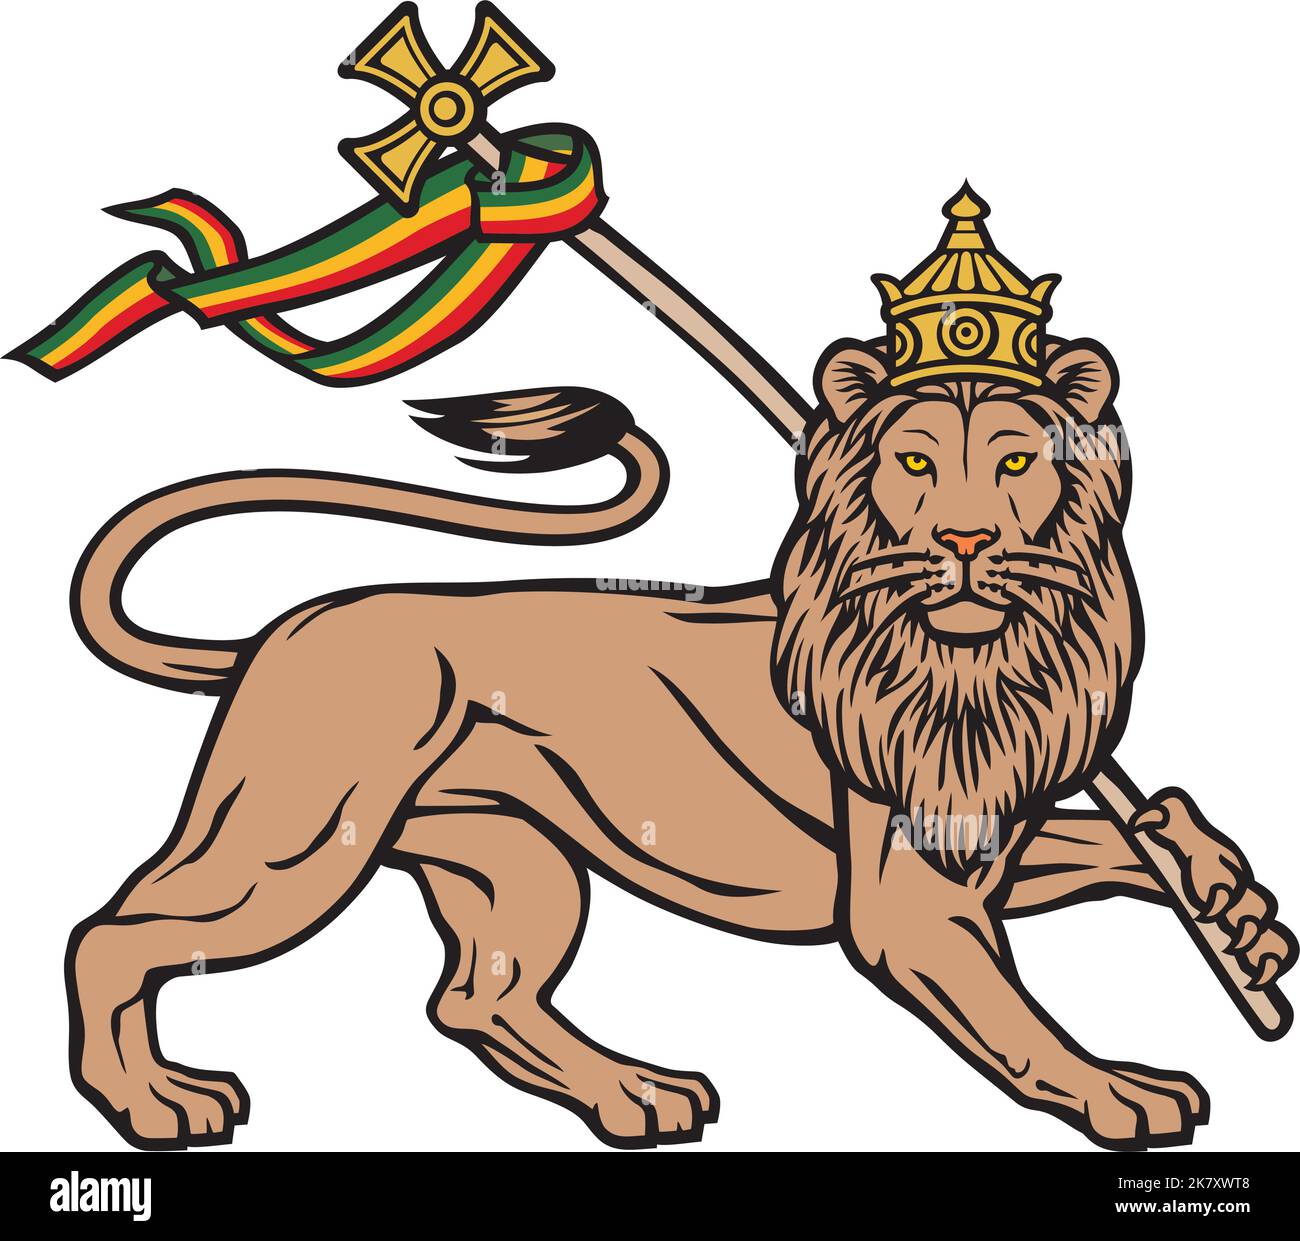 The Lion of Judah (Rastafarian Reggae Symbol). Vector illustration. Stock Vector